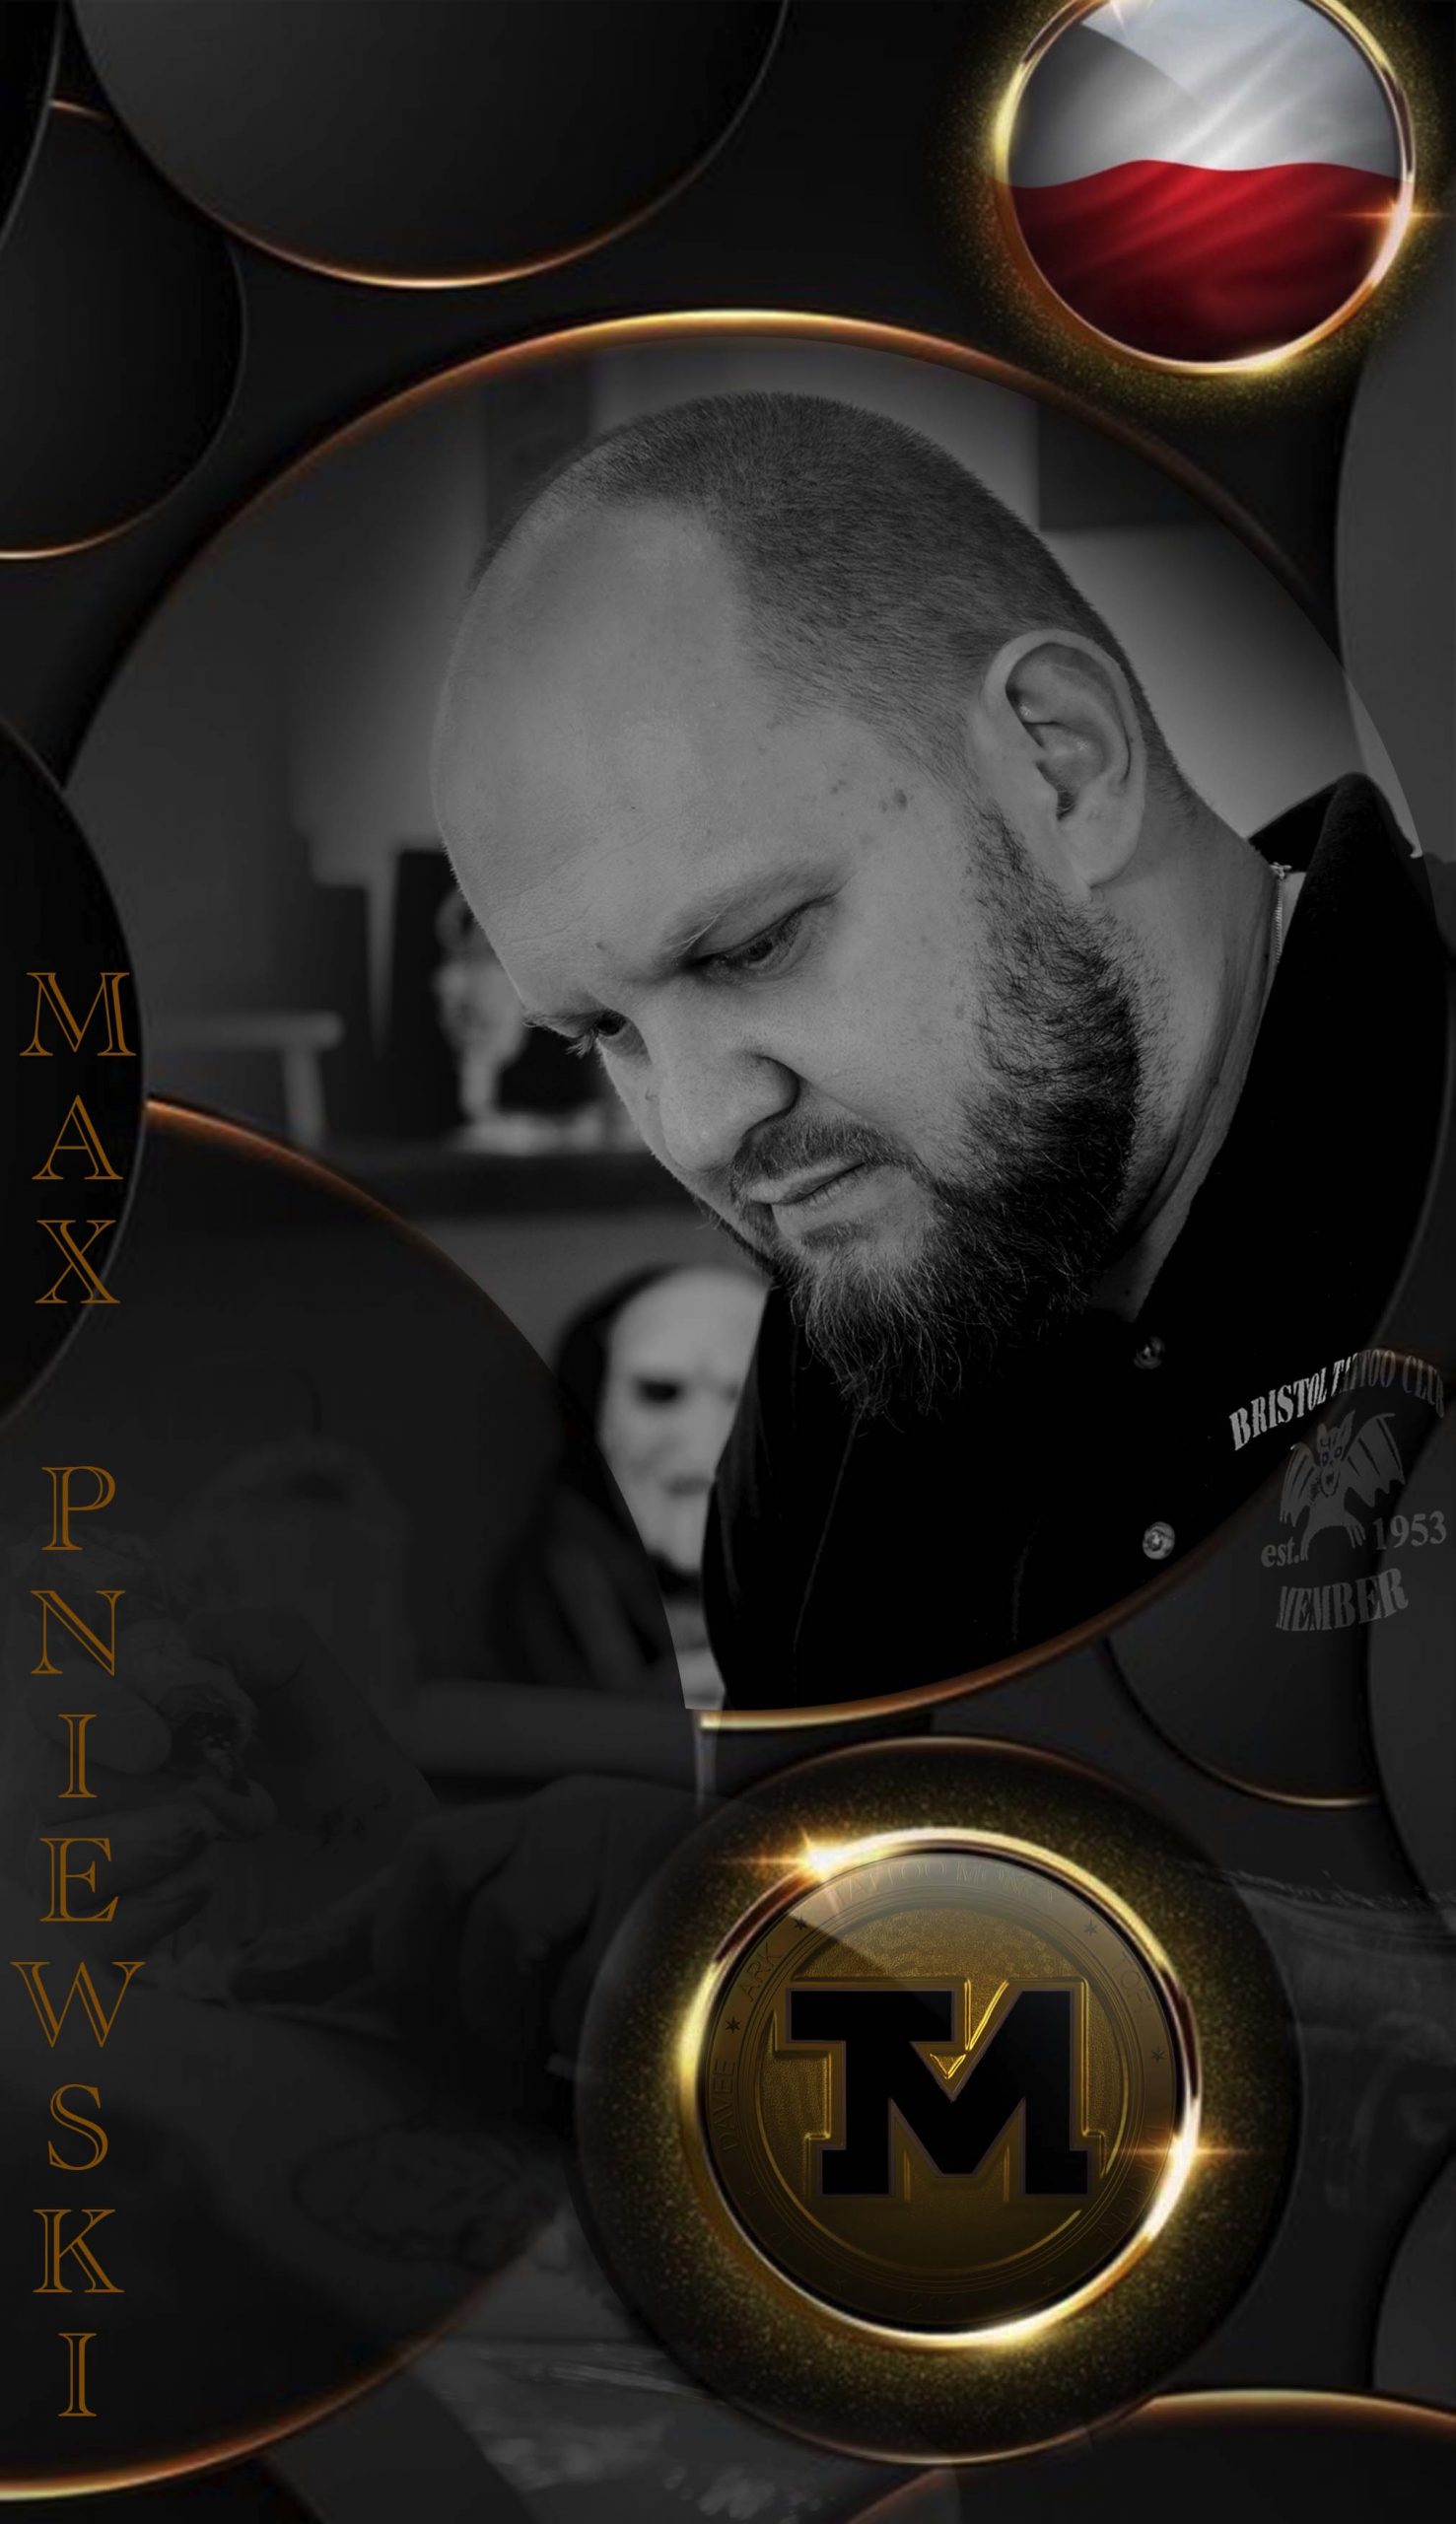 Max Pniewski - Owner and Tattoo Artist at Phoenix Rising Tattoo - Toruń (Poland)